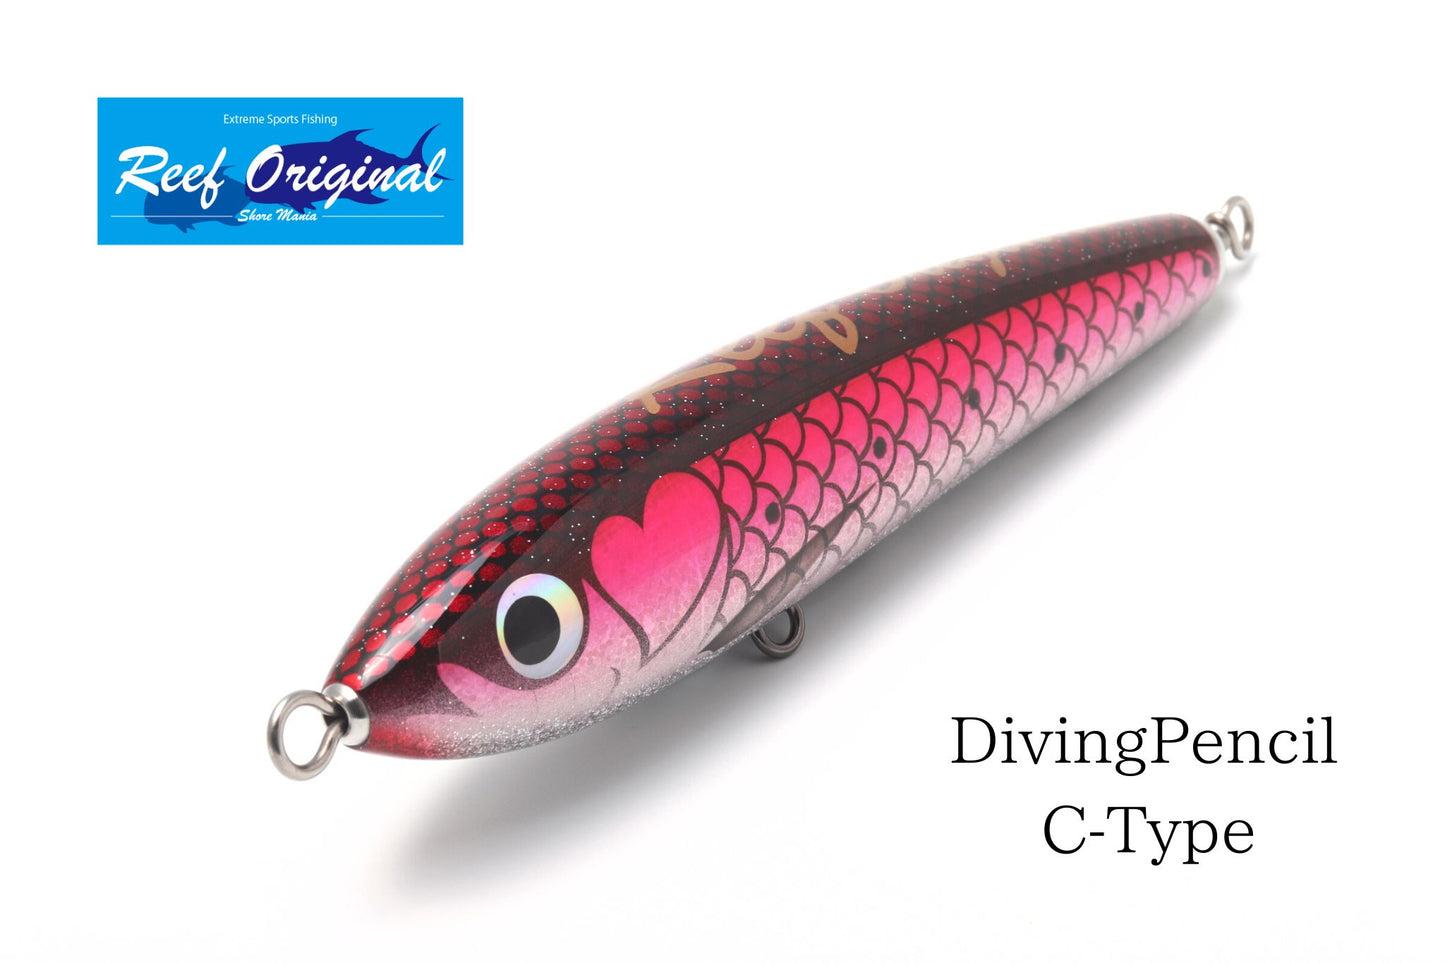 DivingPencil C-Type